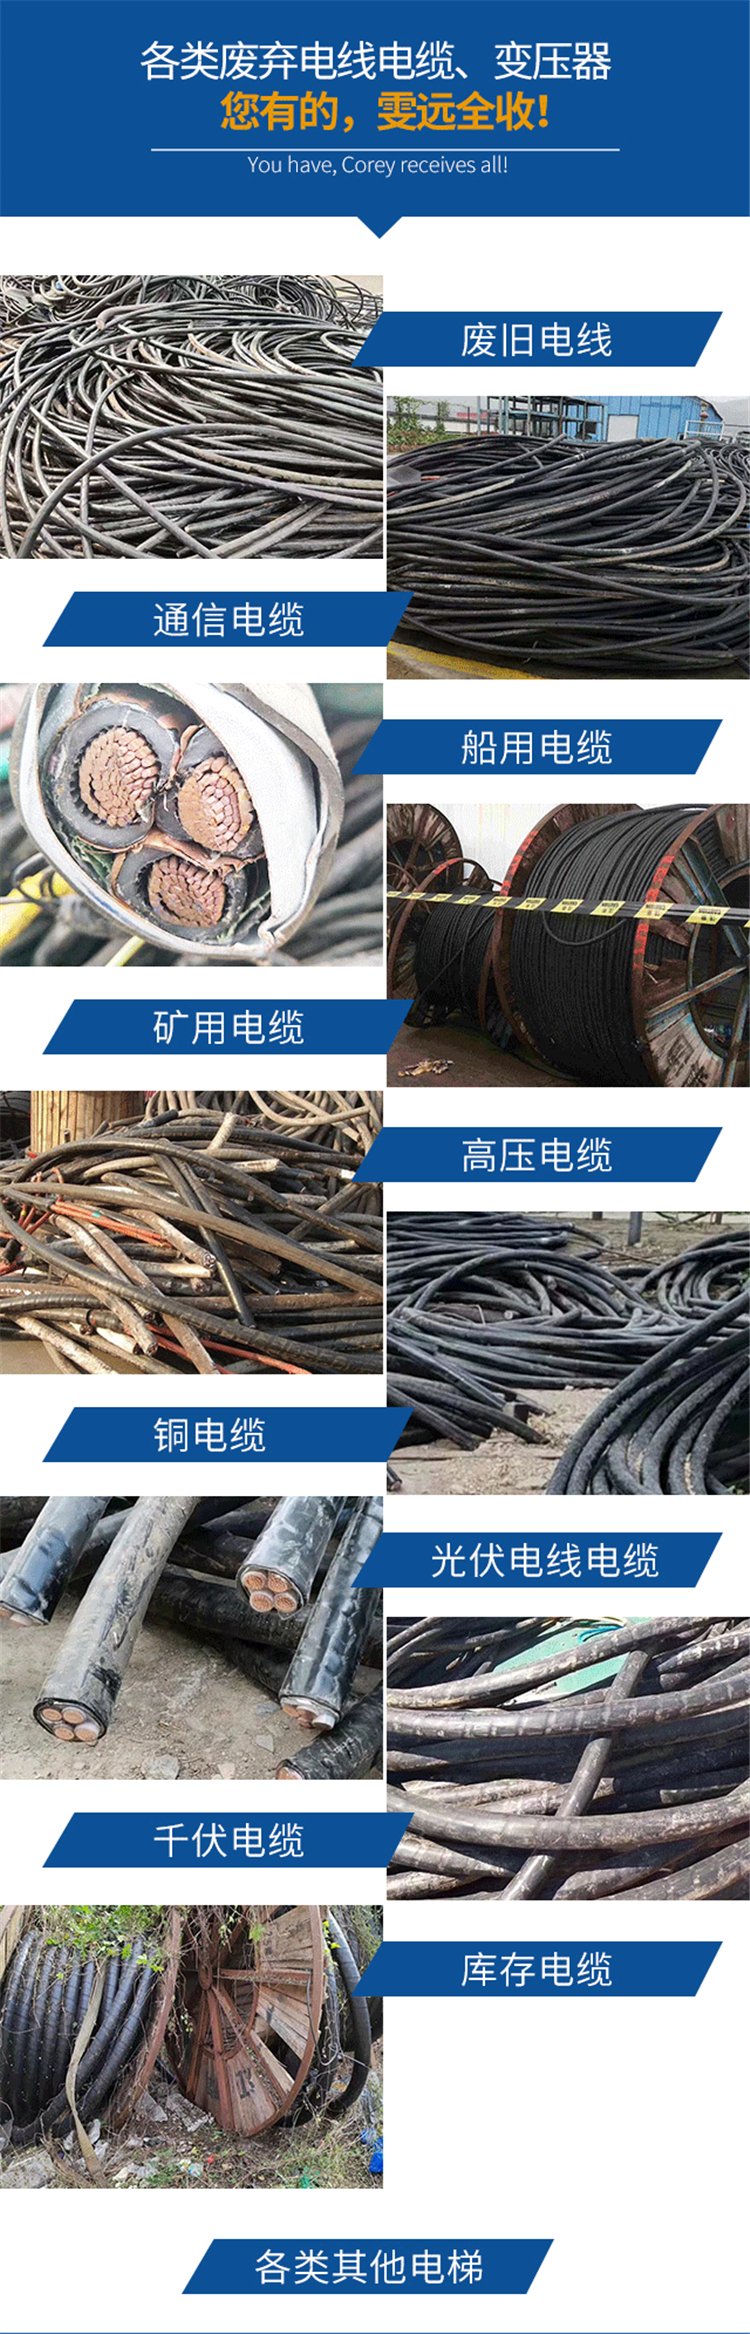 深圳光明美式变压器拆除回收变电站收购商家资质